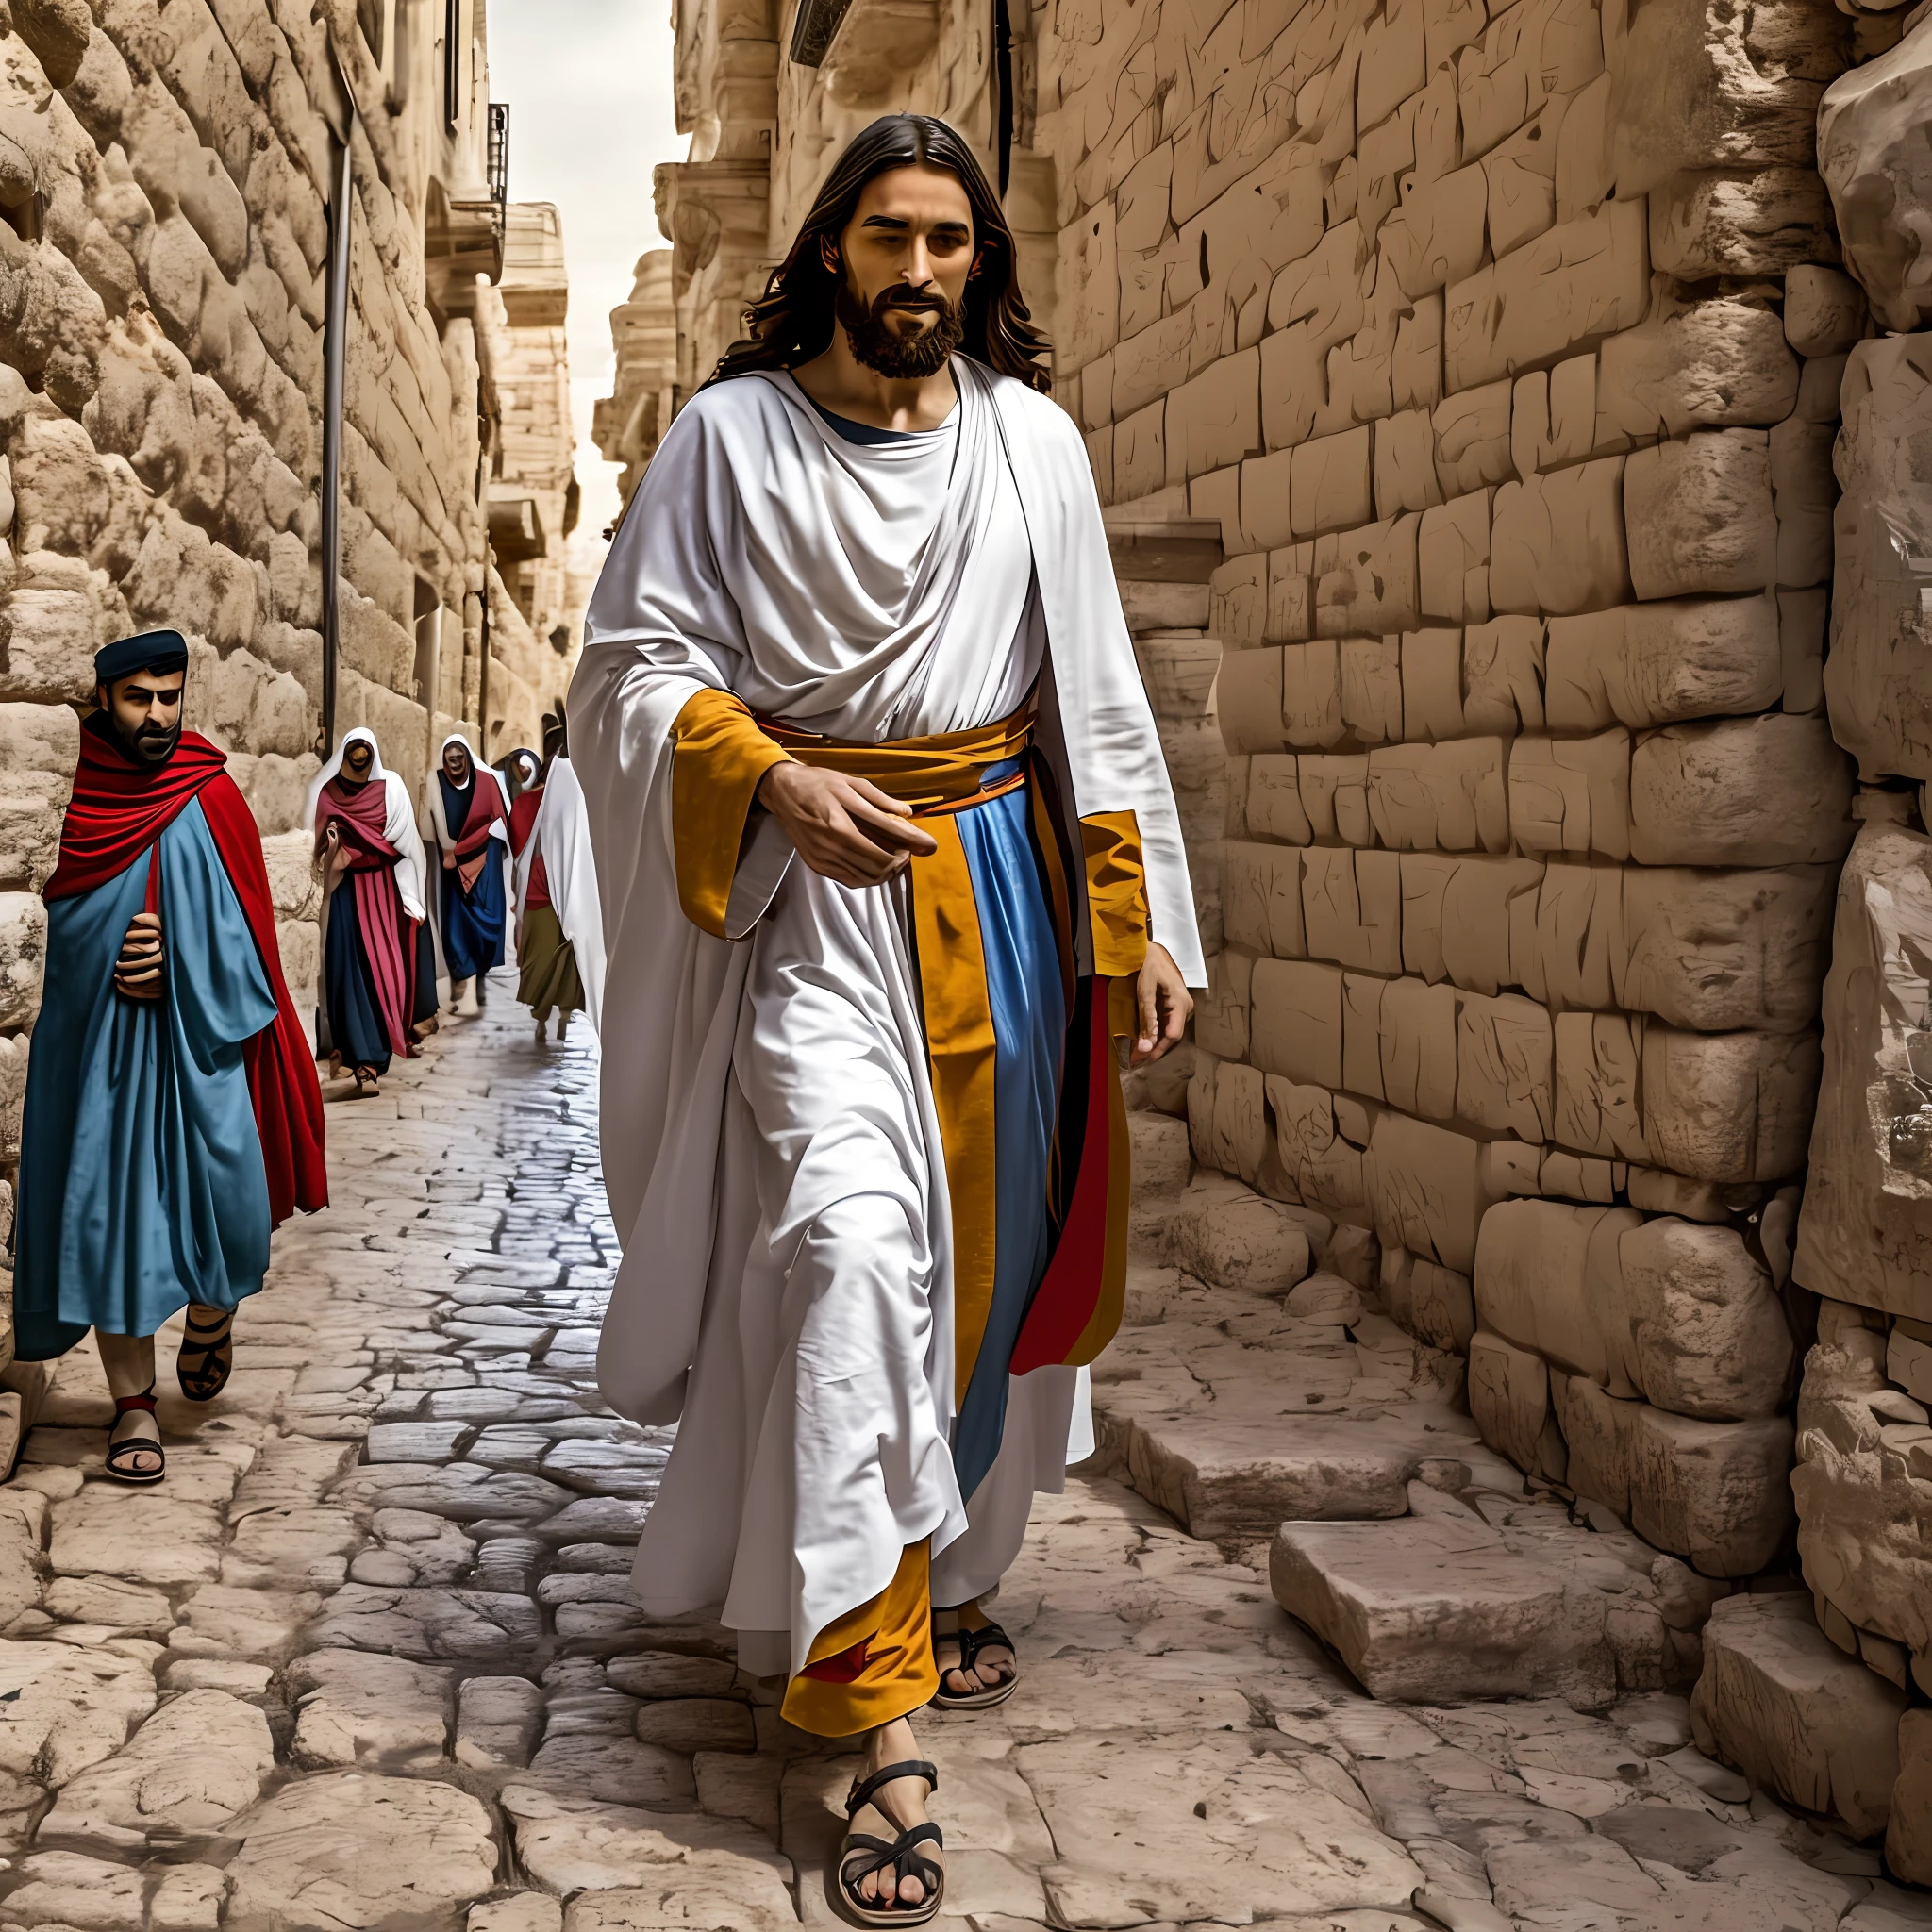 33 岁的拿撒勒人耶稣, 圣经人物, 行走在耶路撒冷城里, 圣经时间--自动--s2